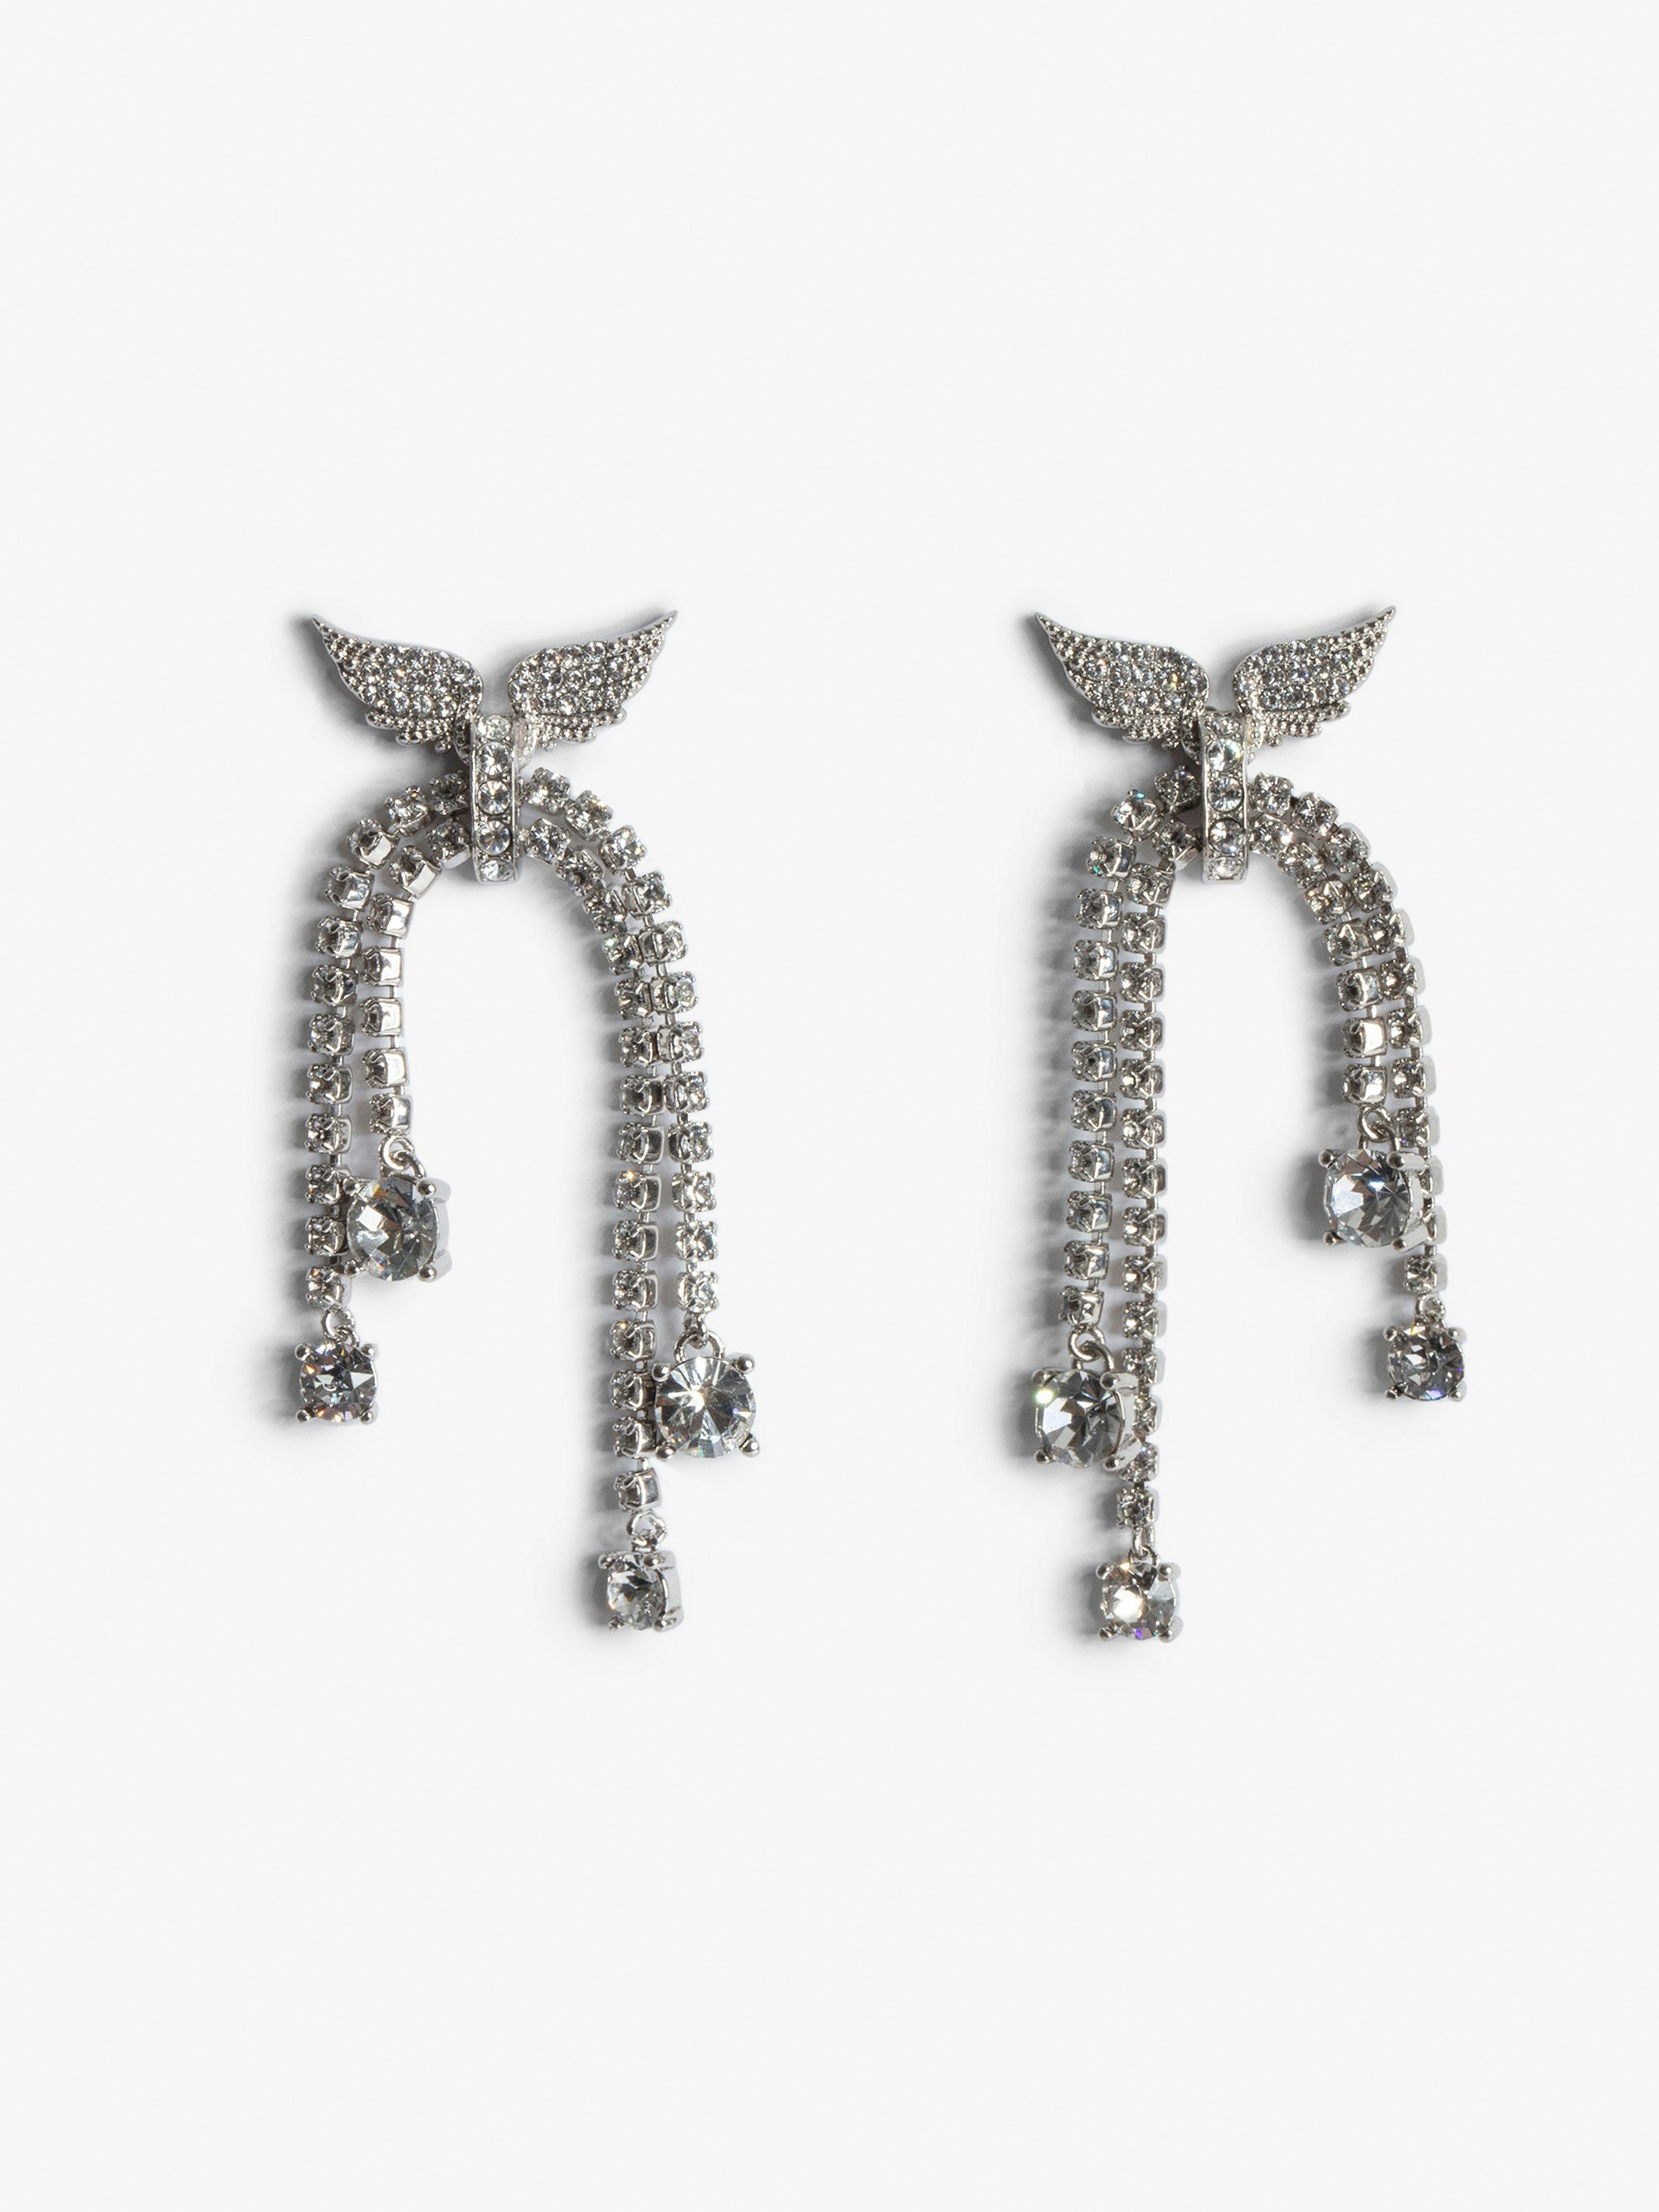 Rock Node Earrings - Silver-tone brass drop earrings with diamanté wings and tassels.